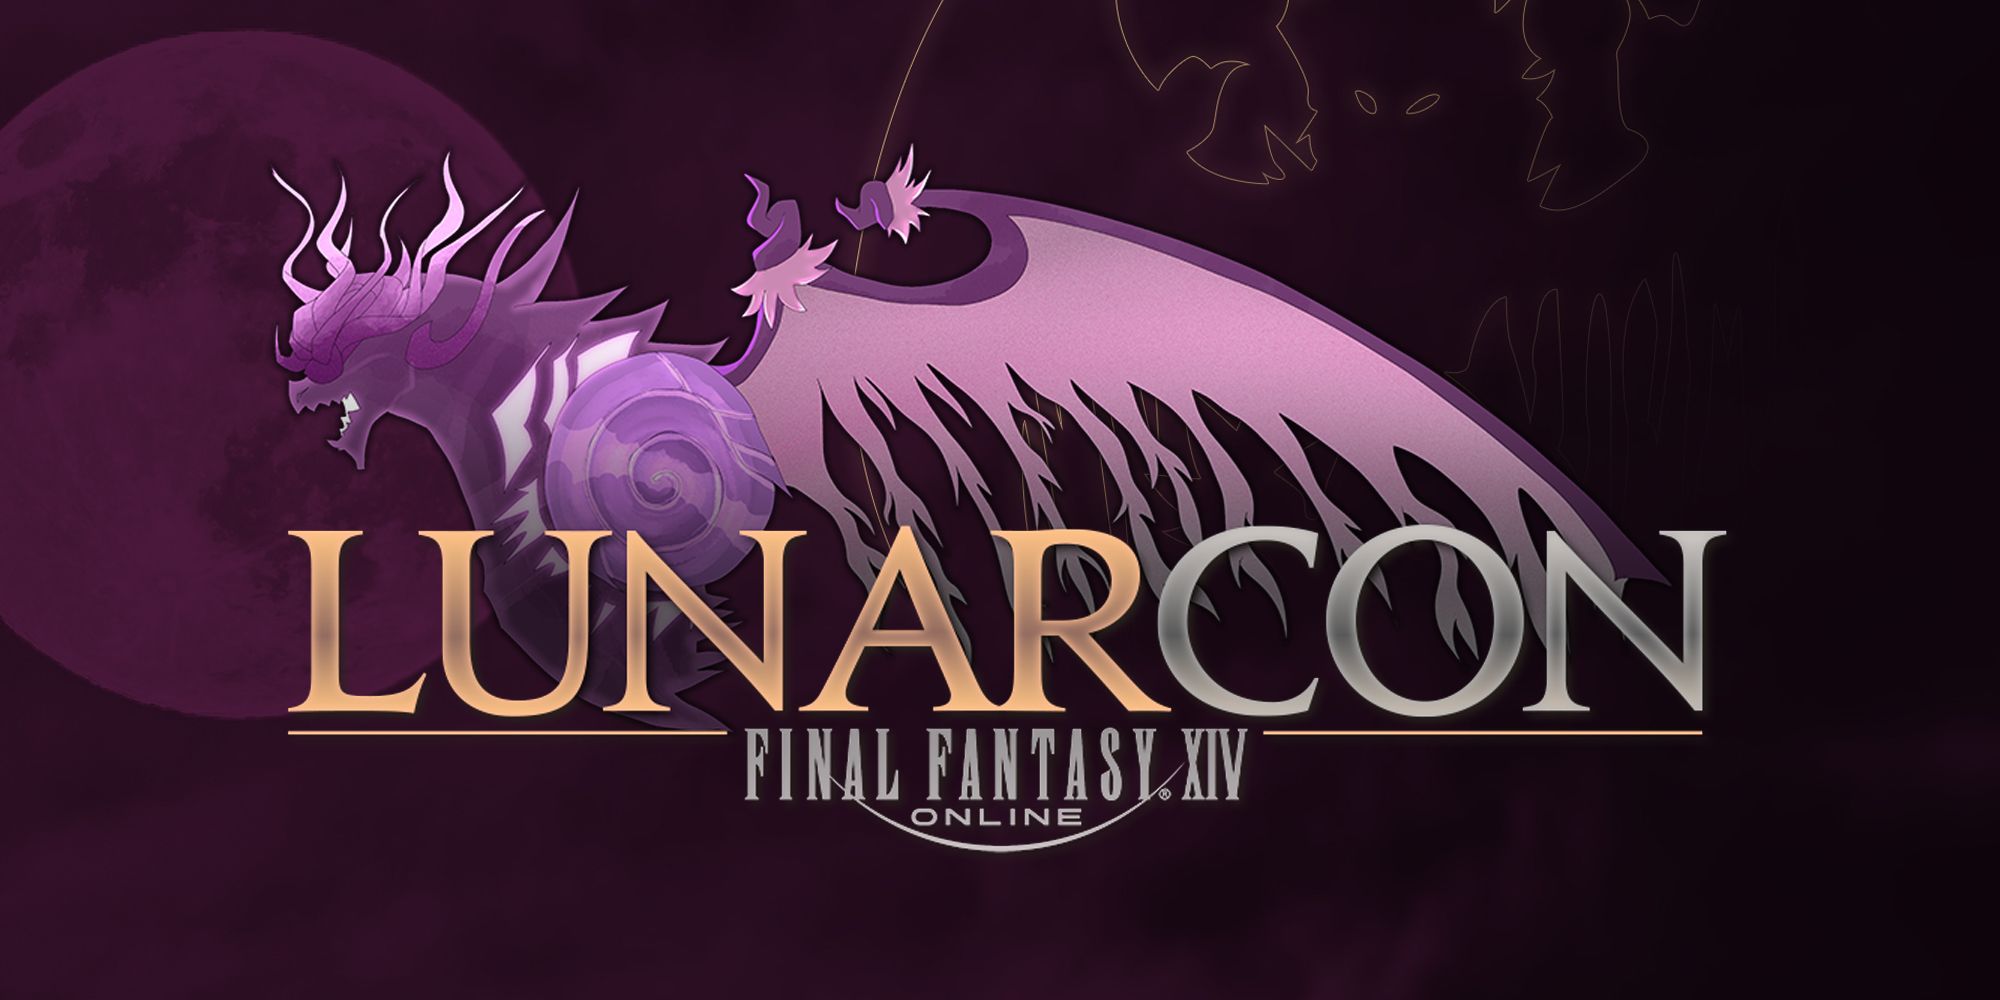 Final Fantasy 14 LunarCon logo